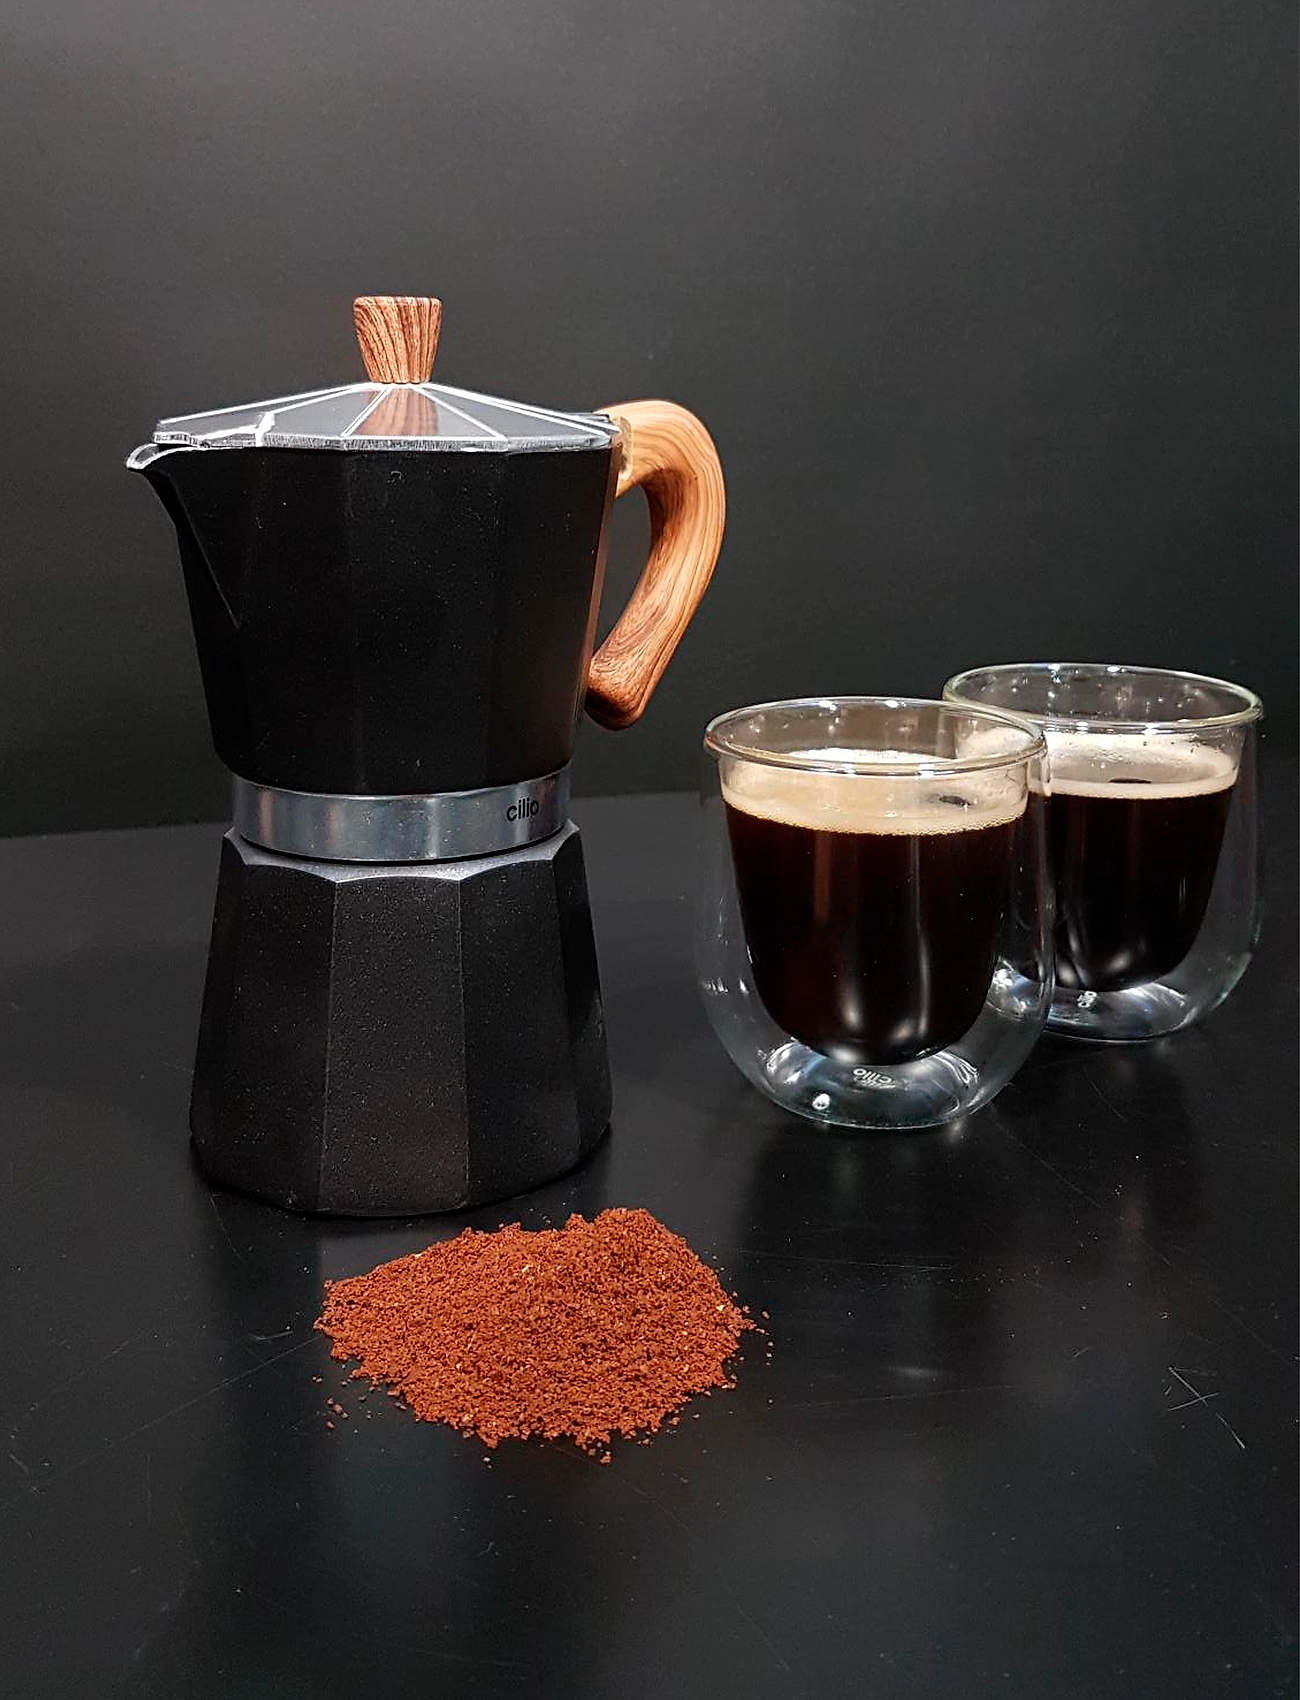 cilio - Espresso maker CLASSICO NATURA 3 cups - mokapotid - black - 1